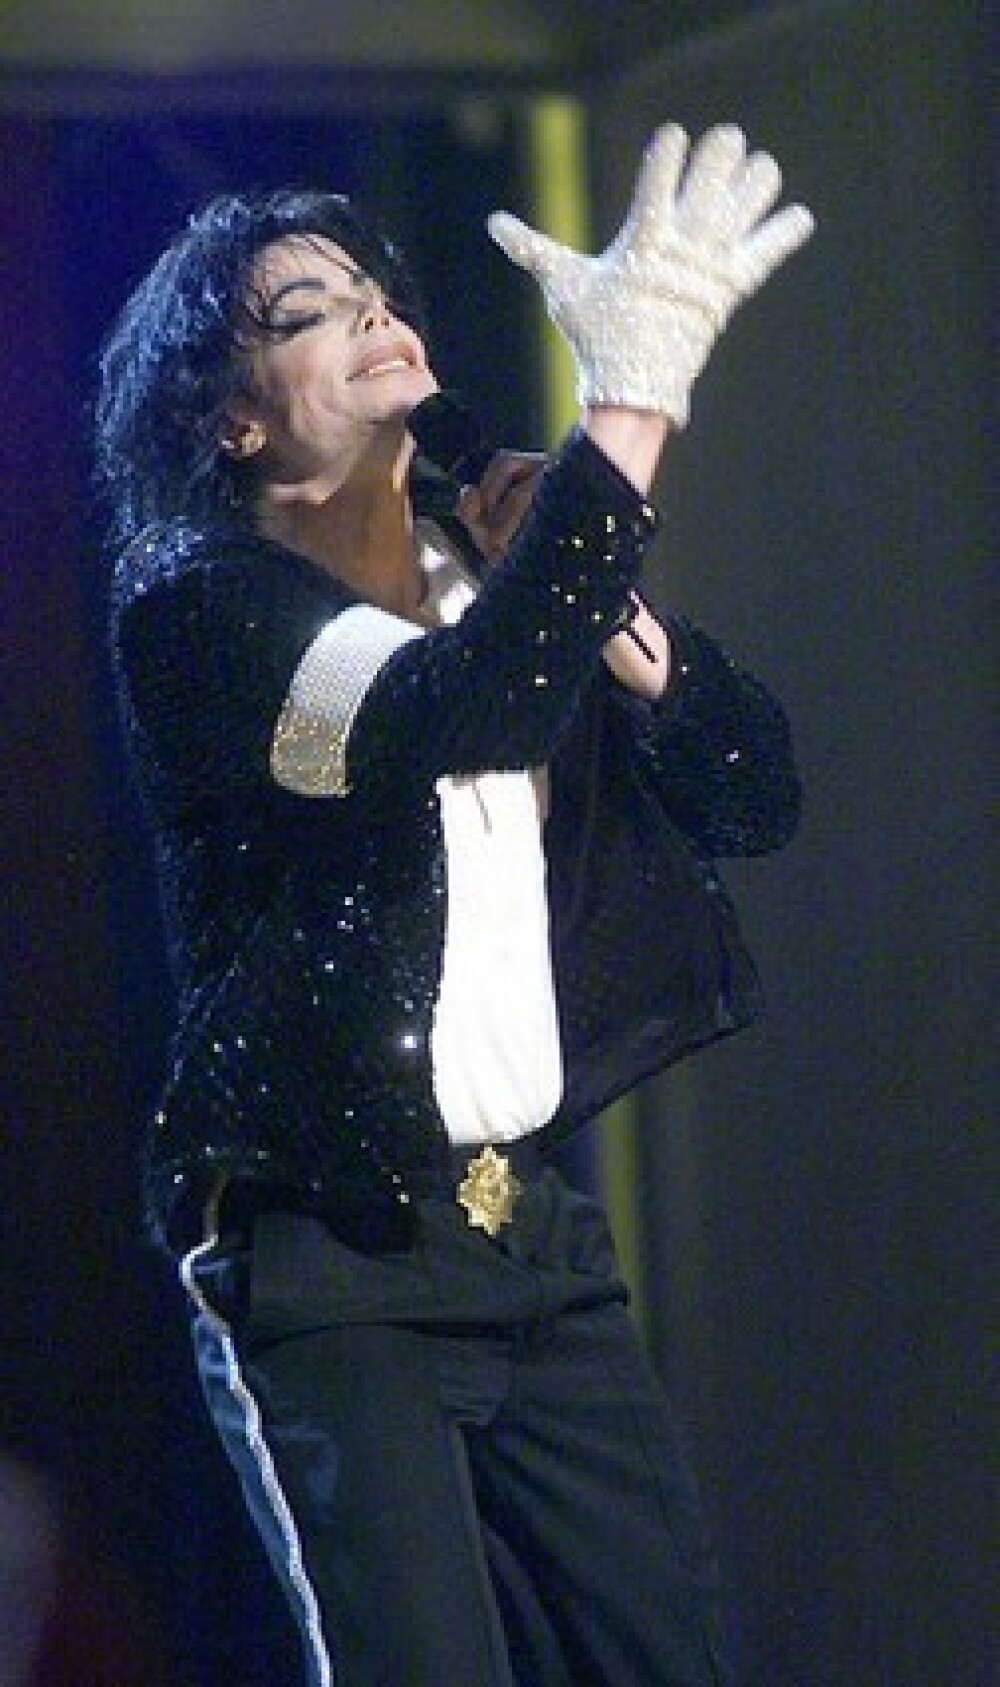 Michael Jackson ar fi implinit azi 52 de ani! Recorduri si controverse - Imaginea 4